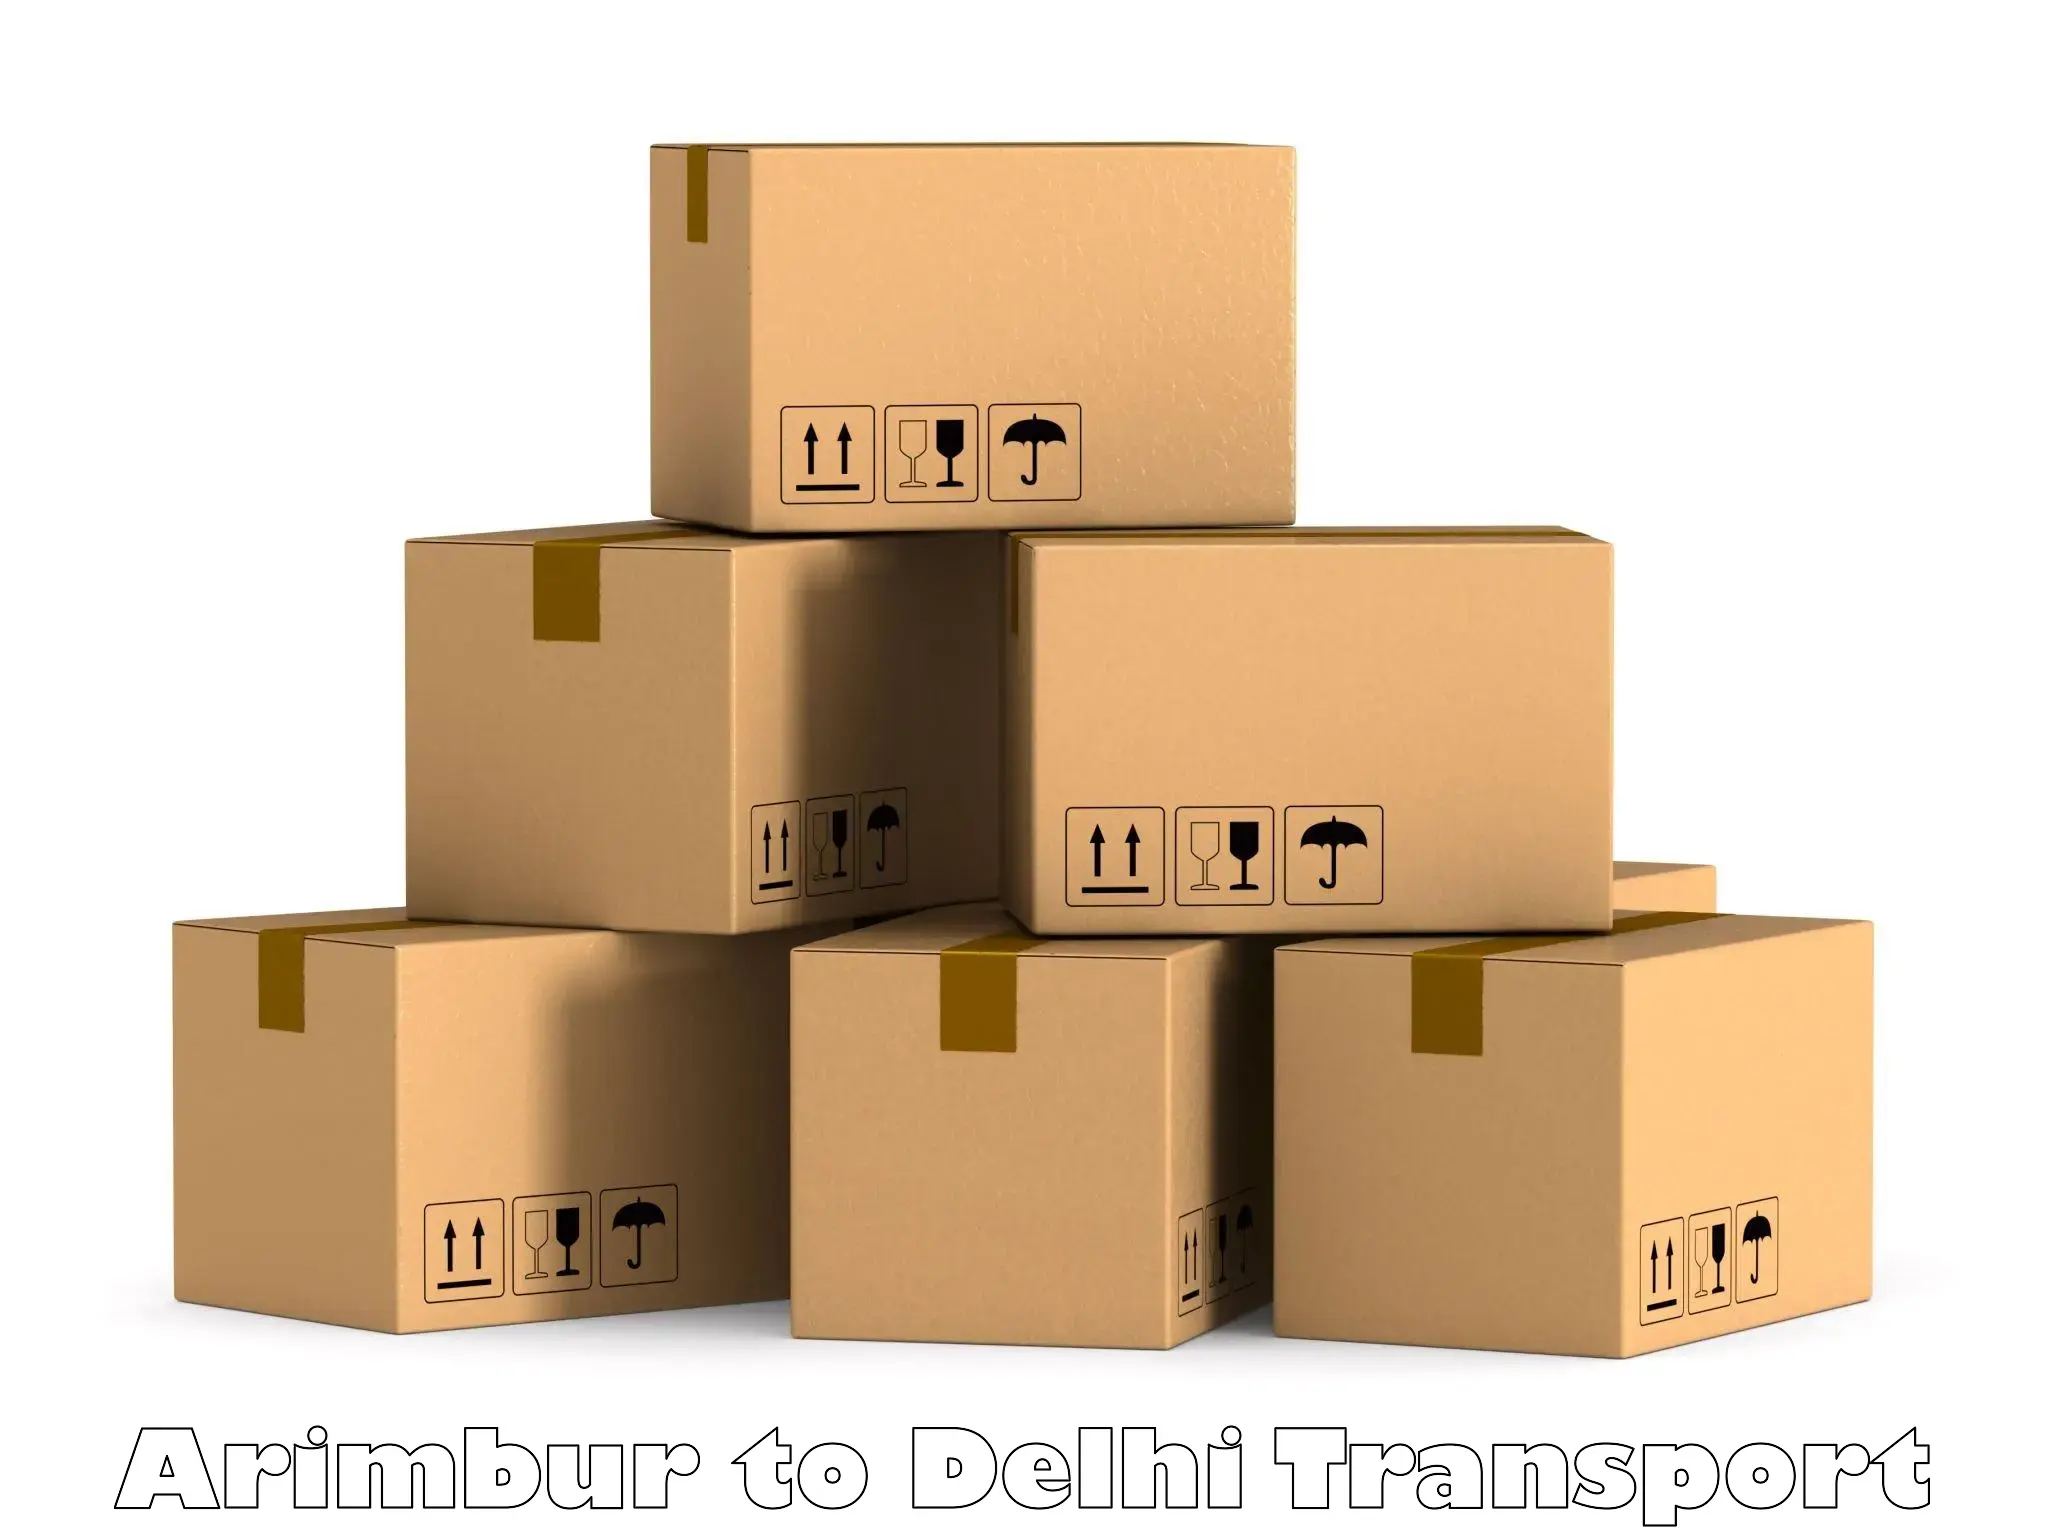 Commercial transport service Arimbur to East Delhi